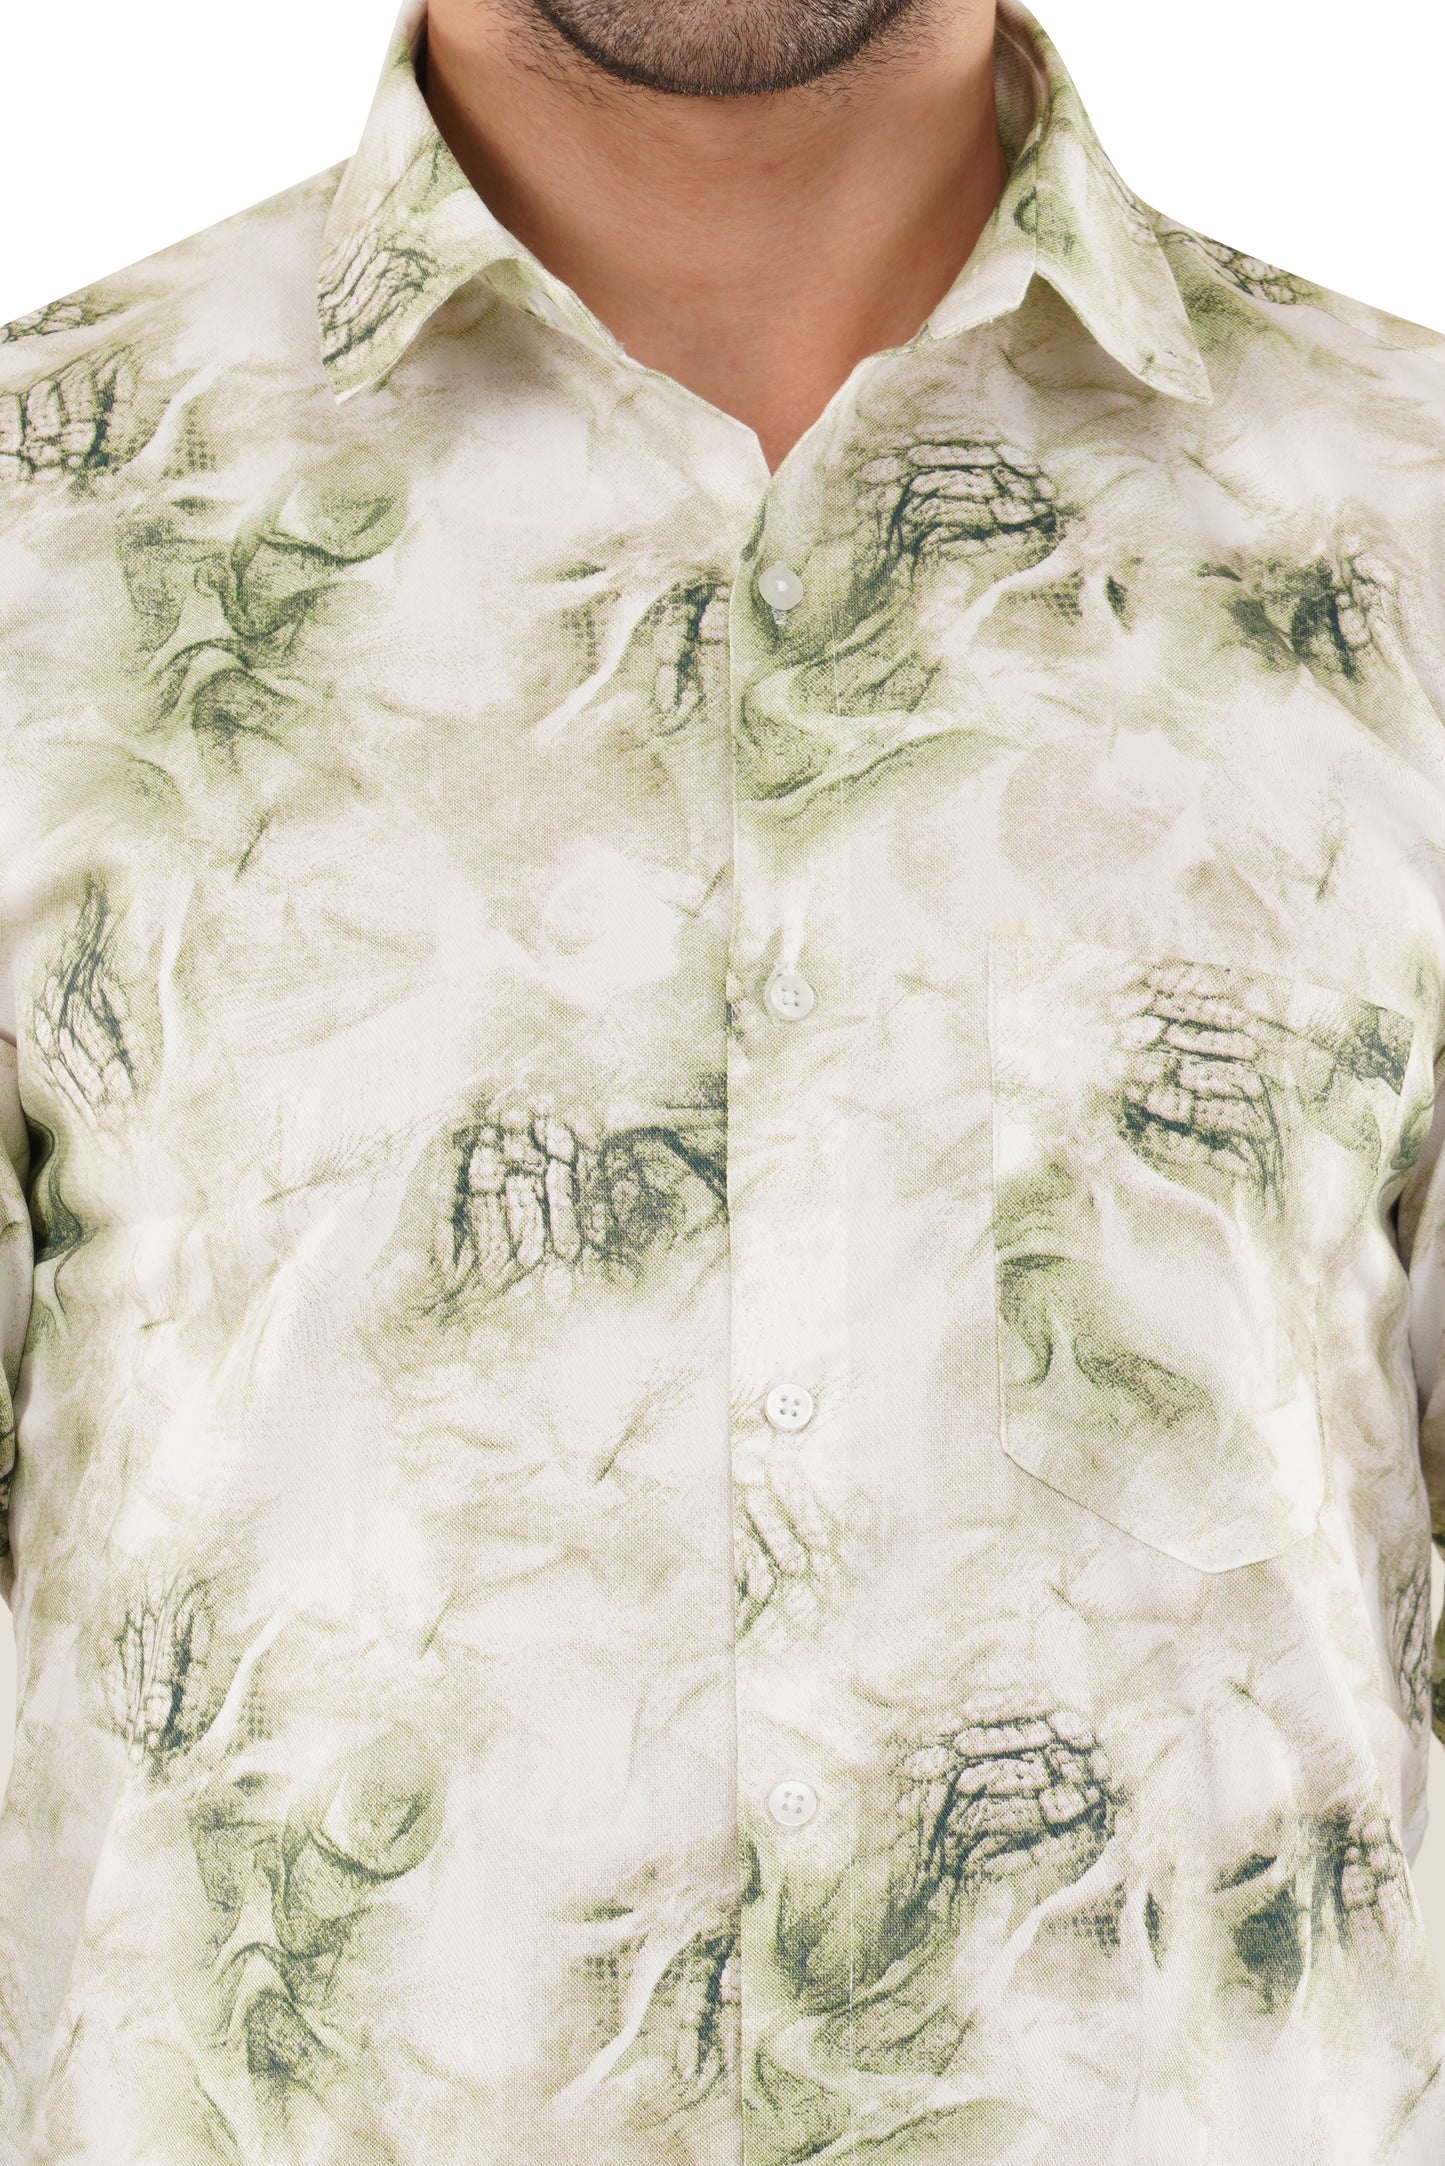 Tree Green Verdant Abstract Printed Casual Shirt